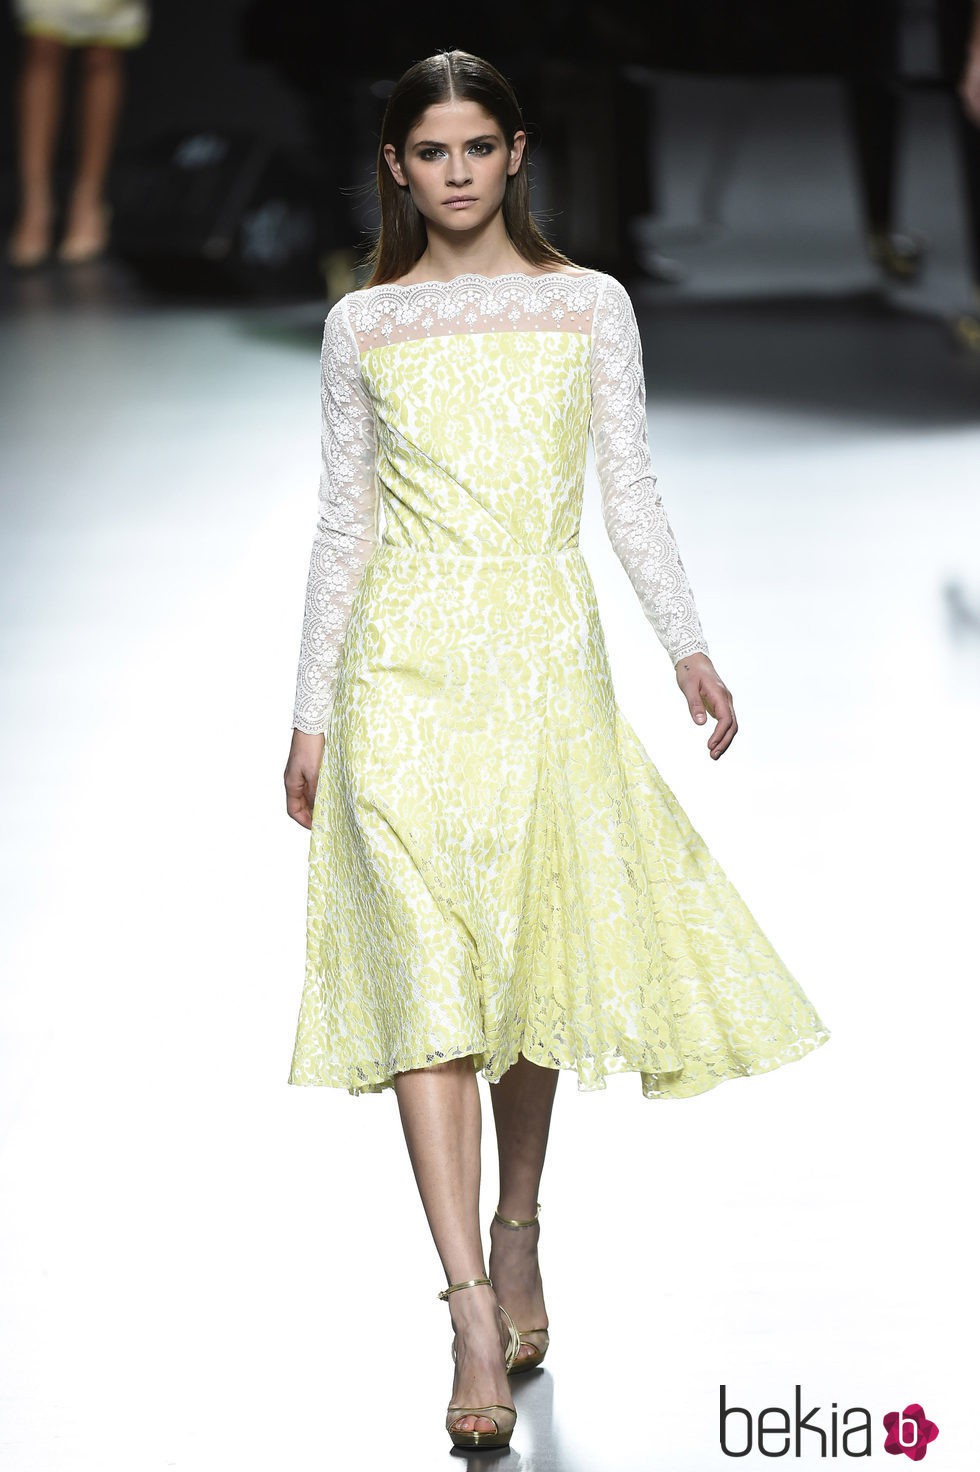 Vestido amarillo y blanco de Ion Fiz para primavera/verano 2016 en Madrid Fashion Week